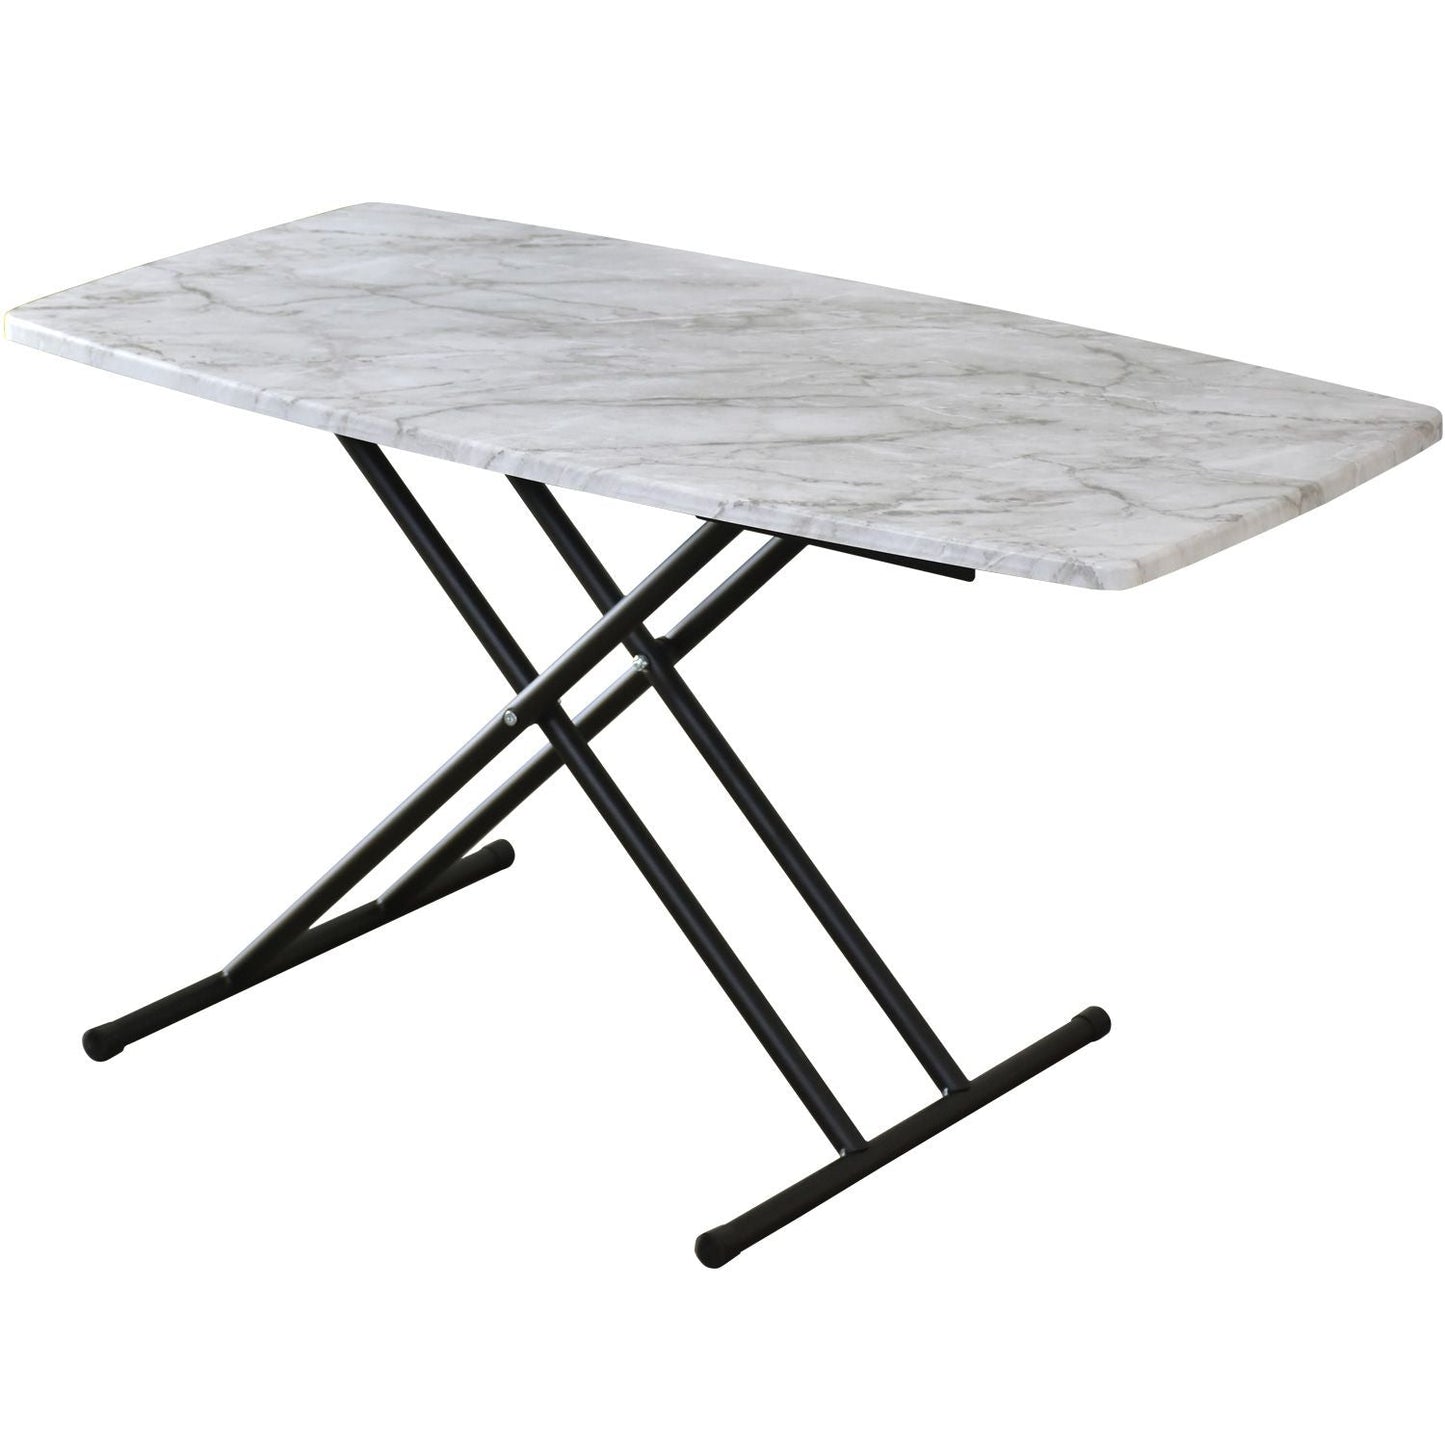 【幅100】 昇降テーブル リフティングテーブル 5段階調整 完成品 トリトン 100×50